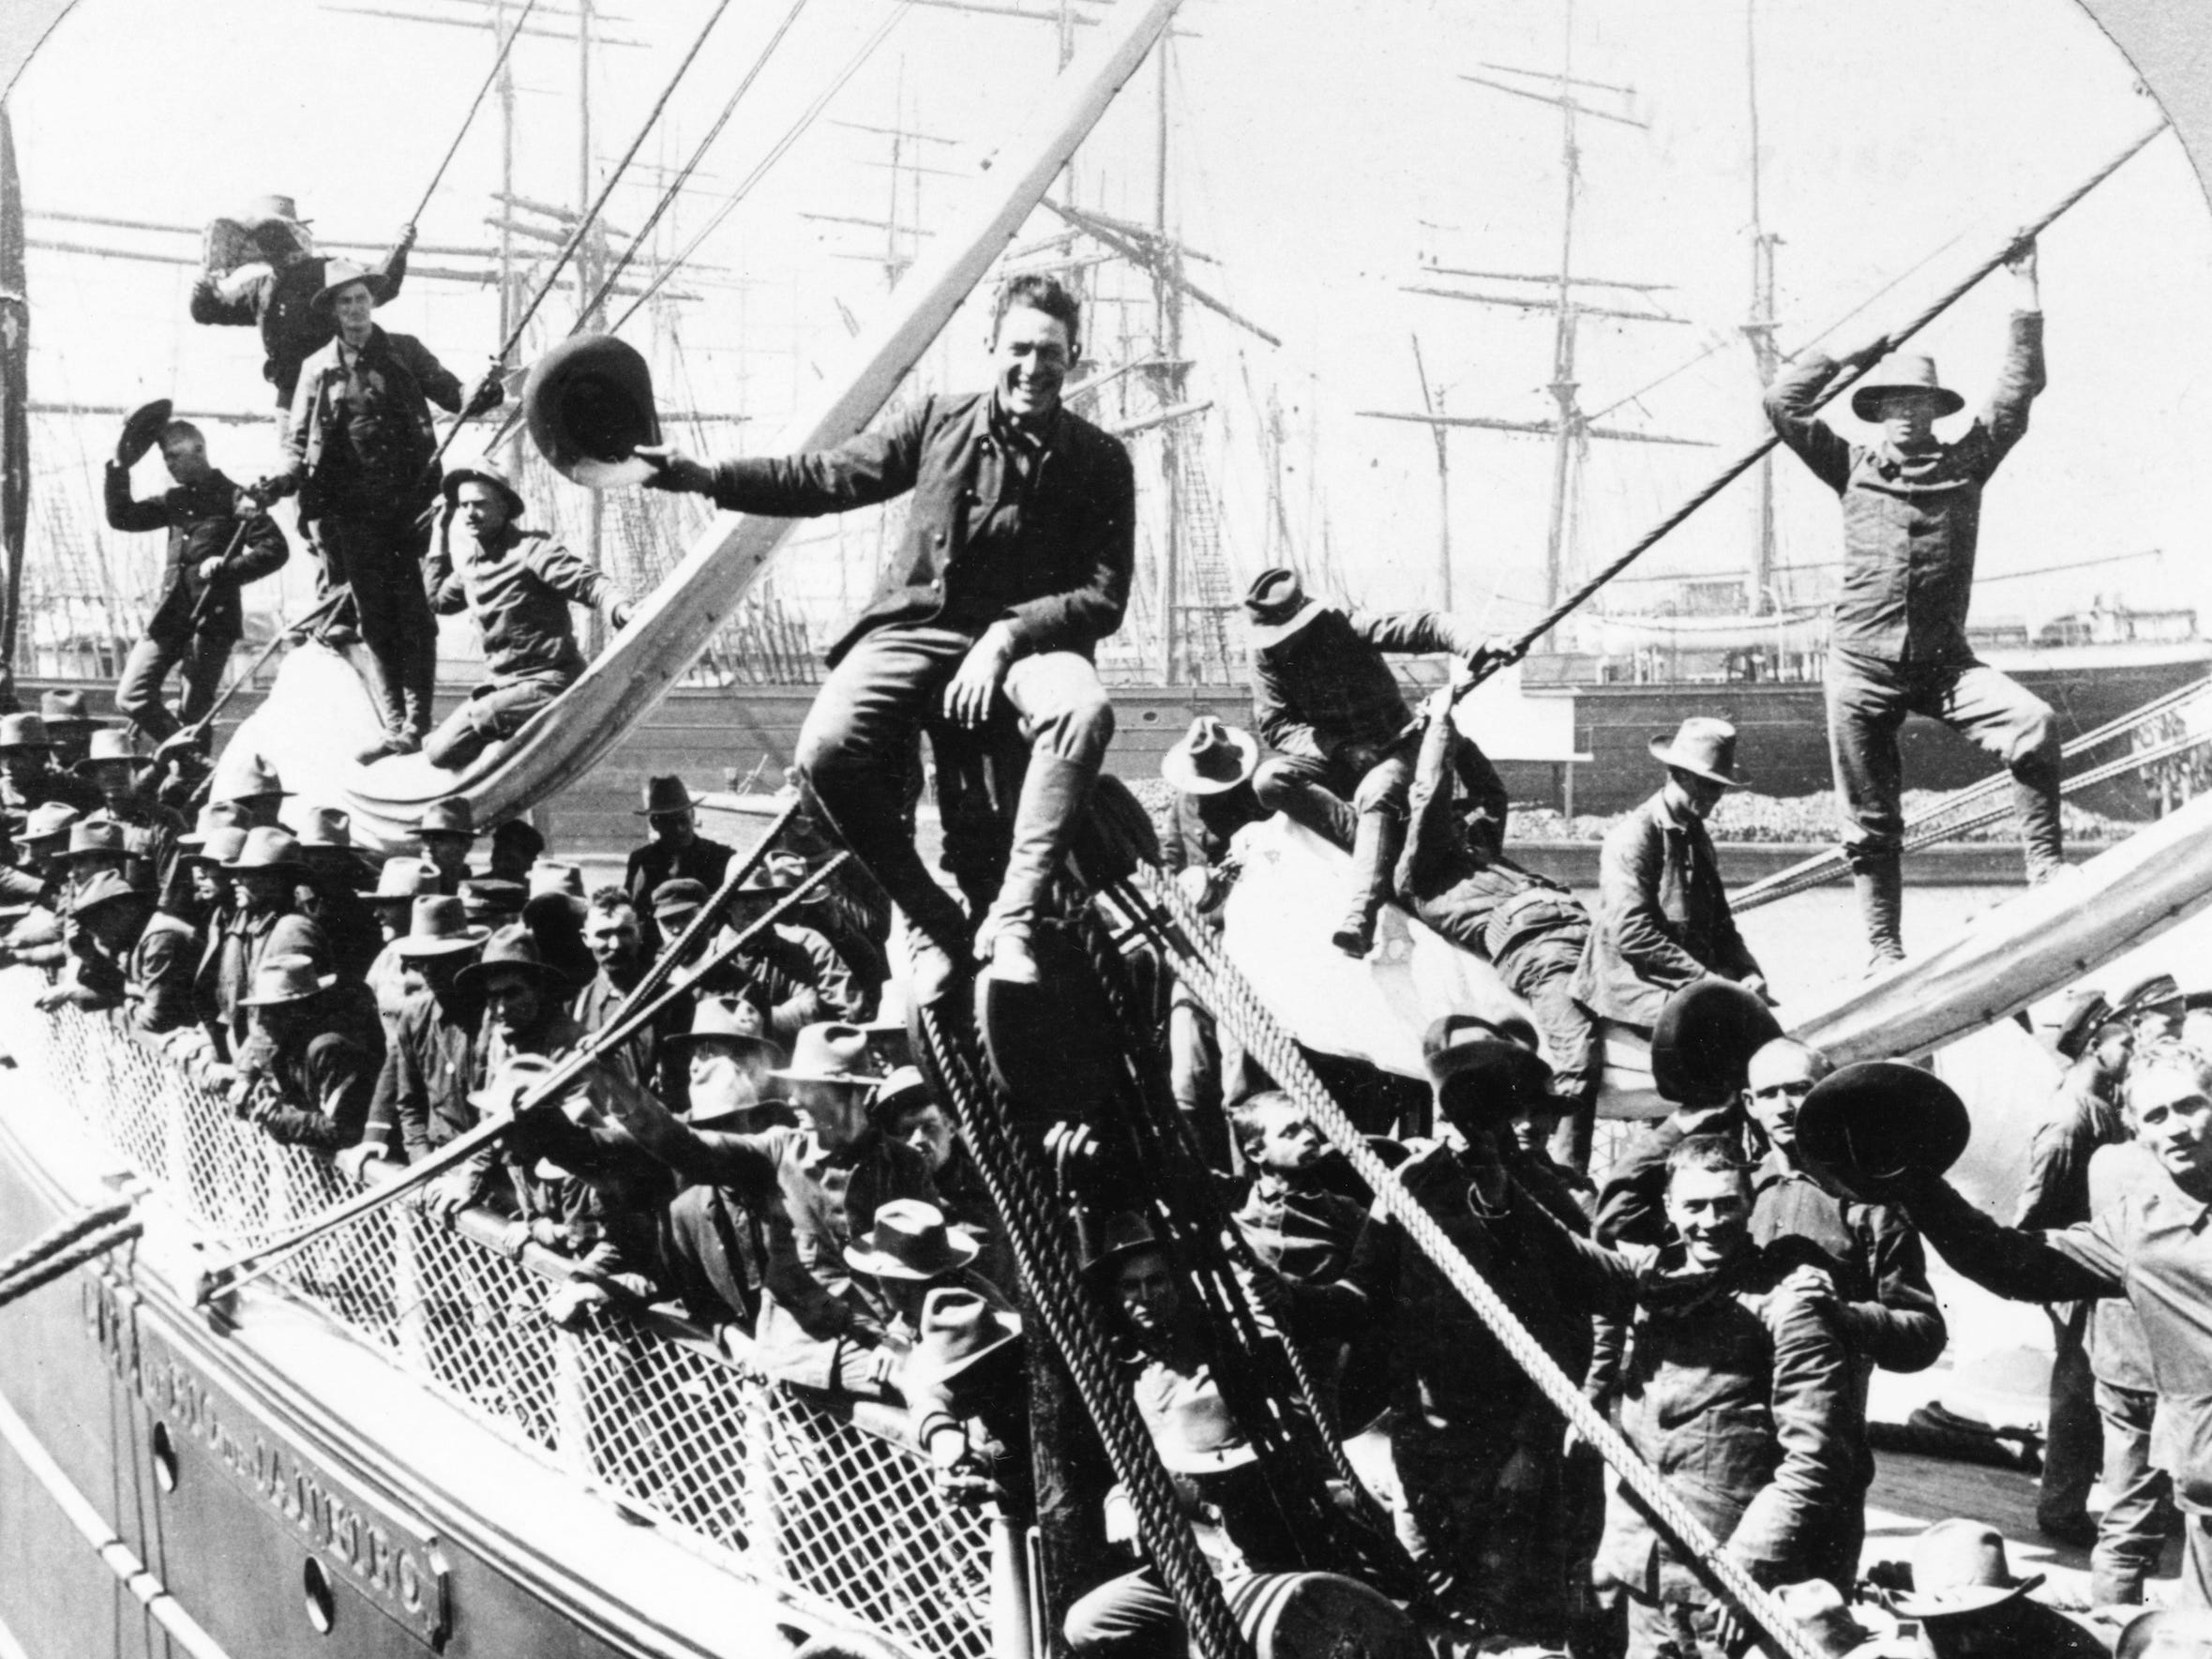 Ein Foto von freiwilligen Soldaten auf einem Boot auf dem Weg nach Manila während des Spanisch-Amerikanischen Krieges.